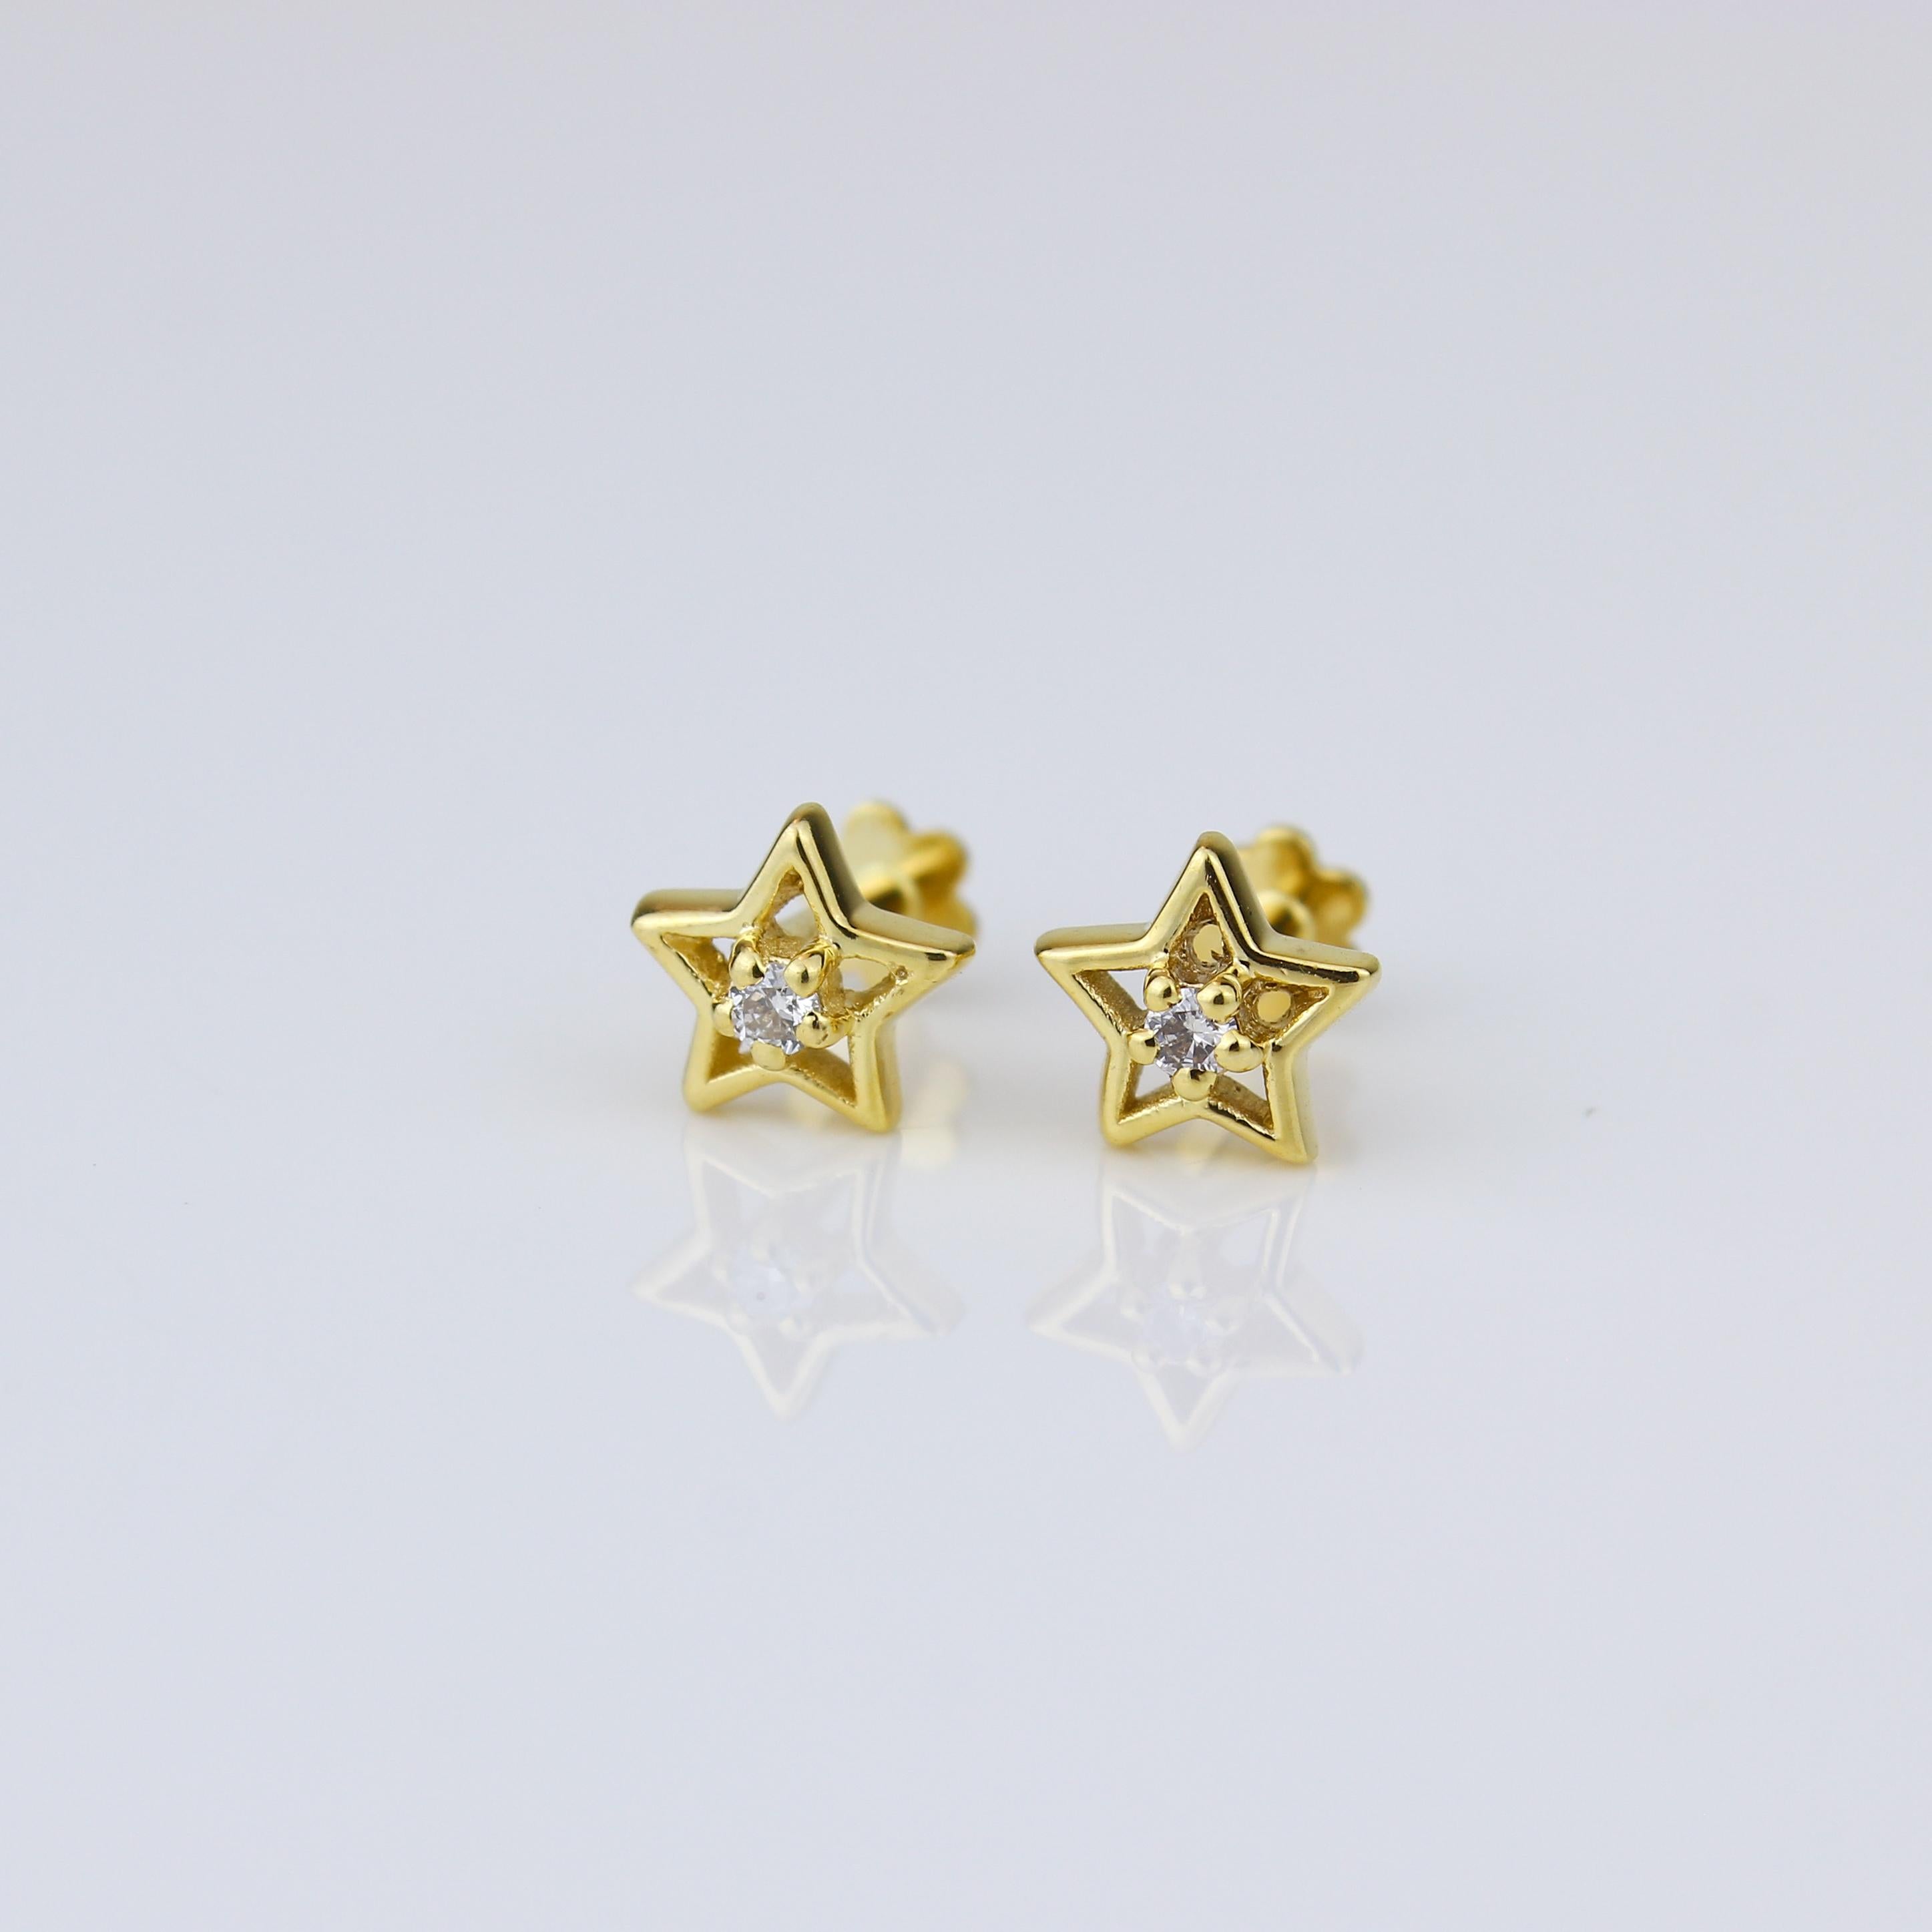 Boucles d'oreilles rayonnantes en diamant en forme d'étoile creuse, conçues exclusivement pour les filles (Kids/Toddlers) en luxueux or massif 18 carats. Ces boucles d'oreilles enchanteresses présentent de délicats motifs d'étoiles creuses ornés de